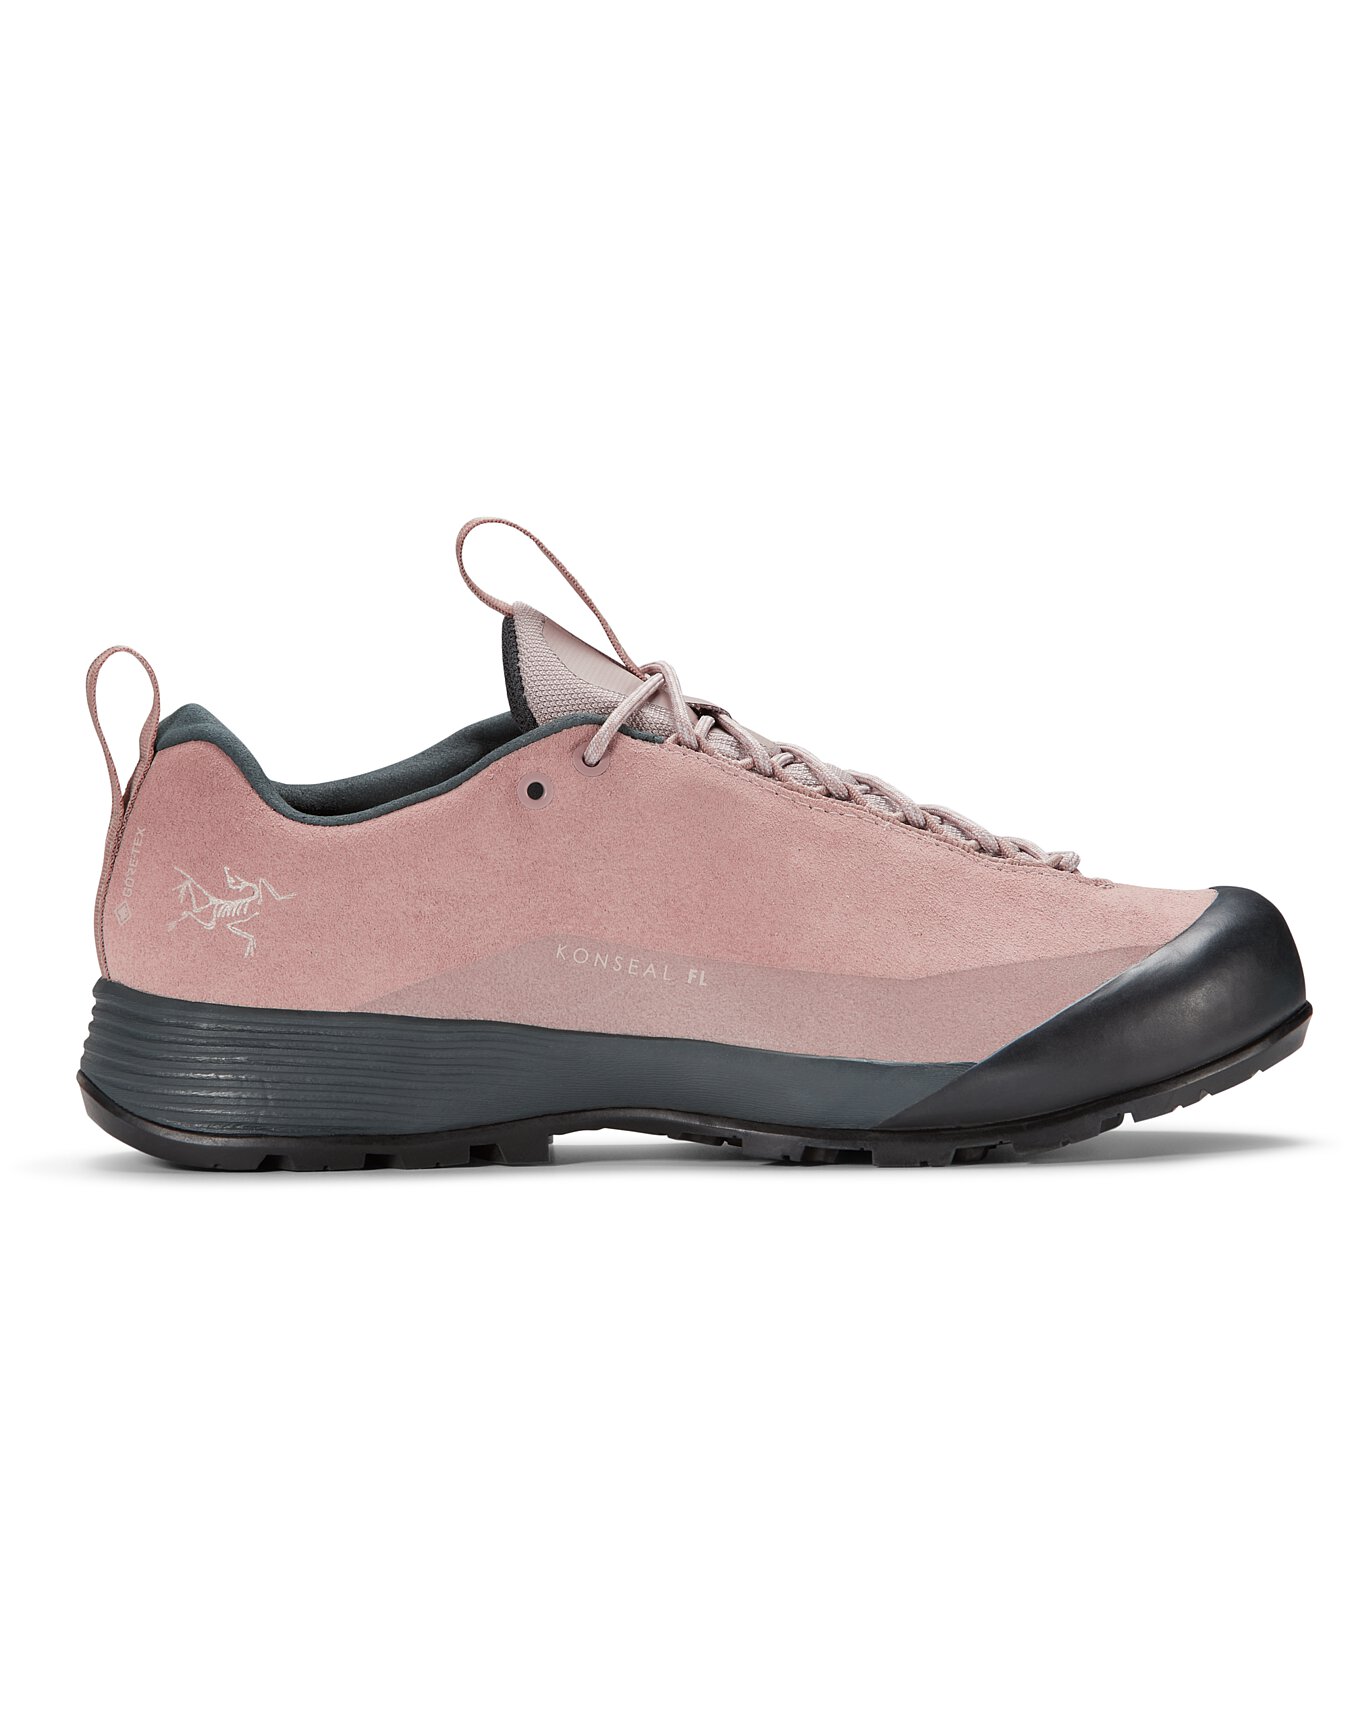 Used Konseal FL 2 Leather GTX Shoe Women's | Arc'teryx ReGEAR